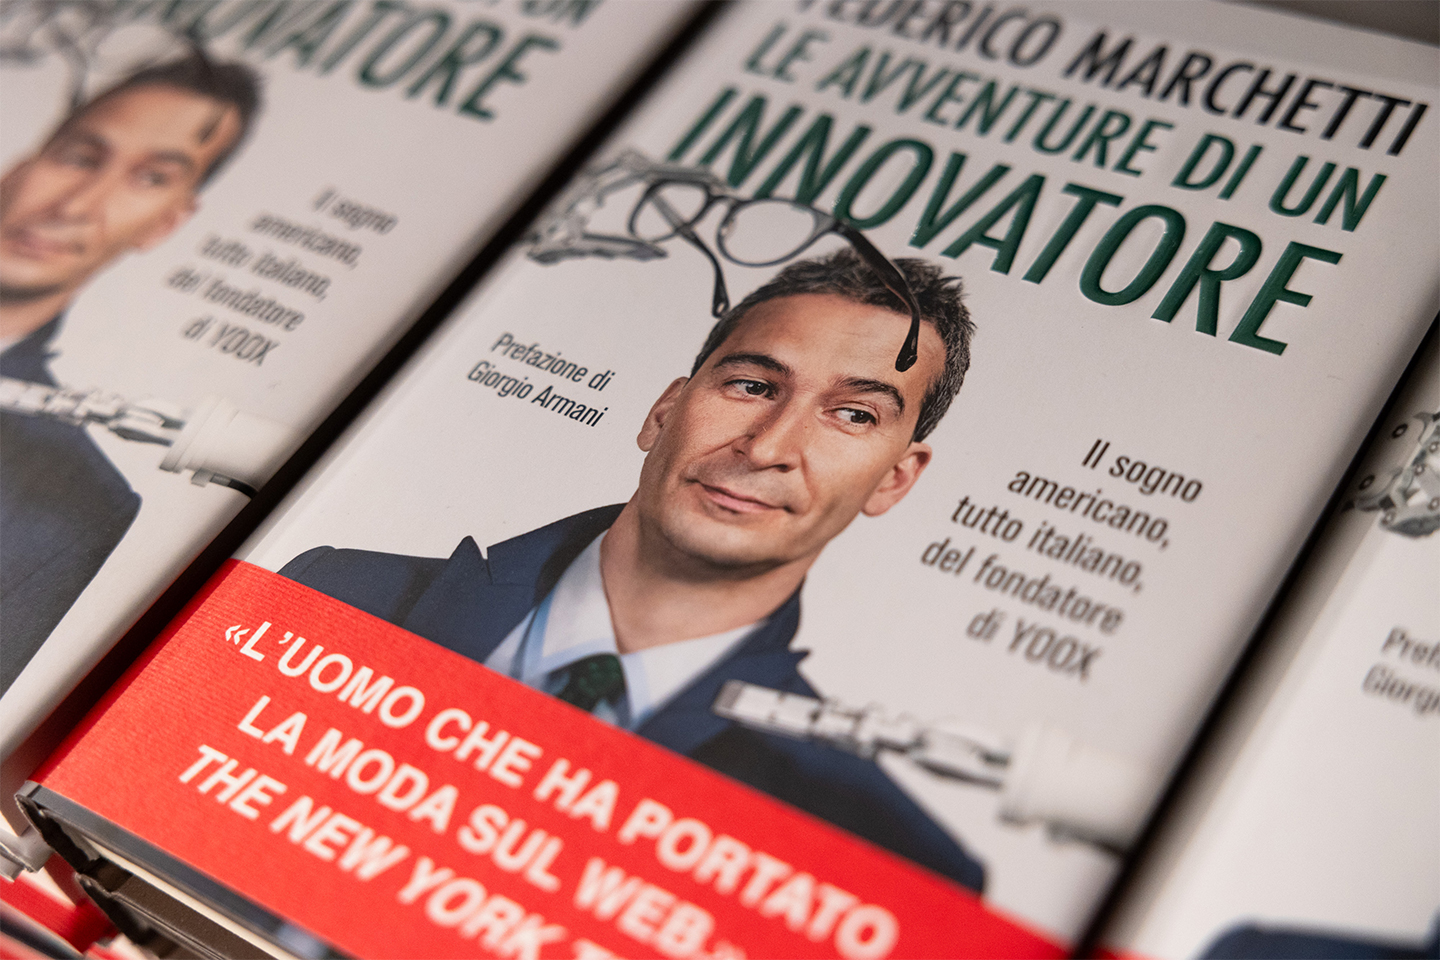 Federico Marchetti's book, "Le Avventure di un Innovatore" (The Adventures of an Innovator)